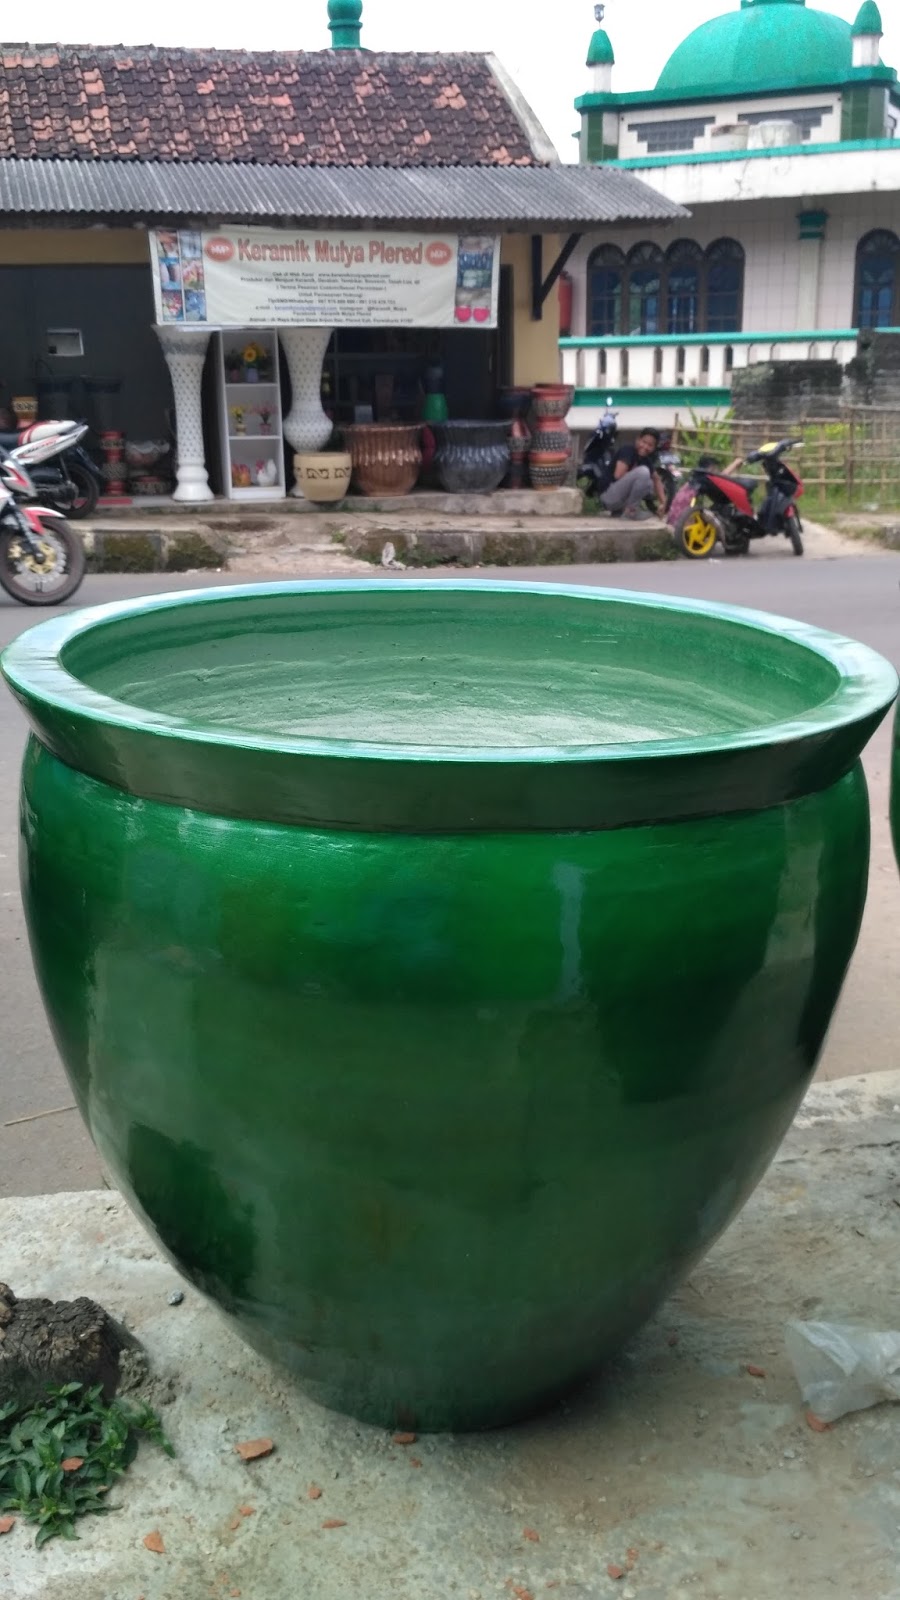  Pot Gentong  Keramik Mulya Plered